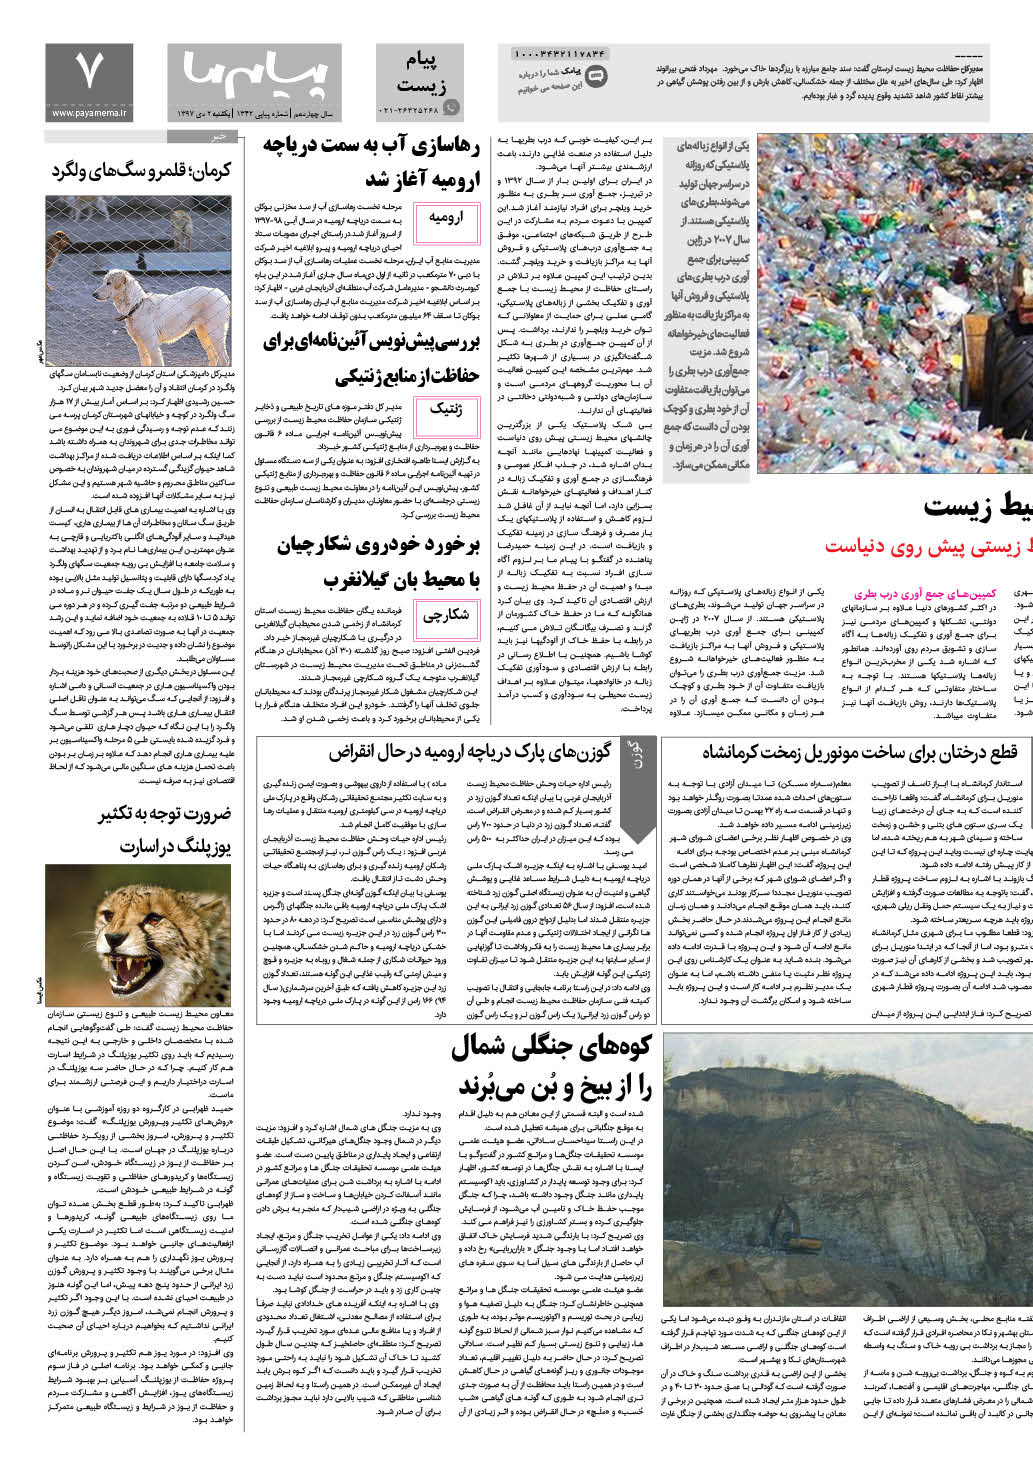 صفحه پیام زیست شماره 1342 روزنامه پیام ما